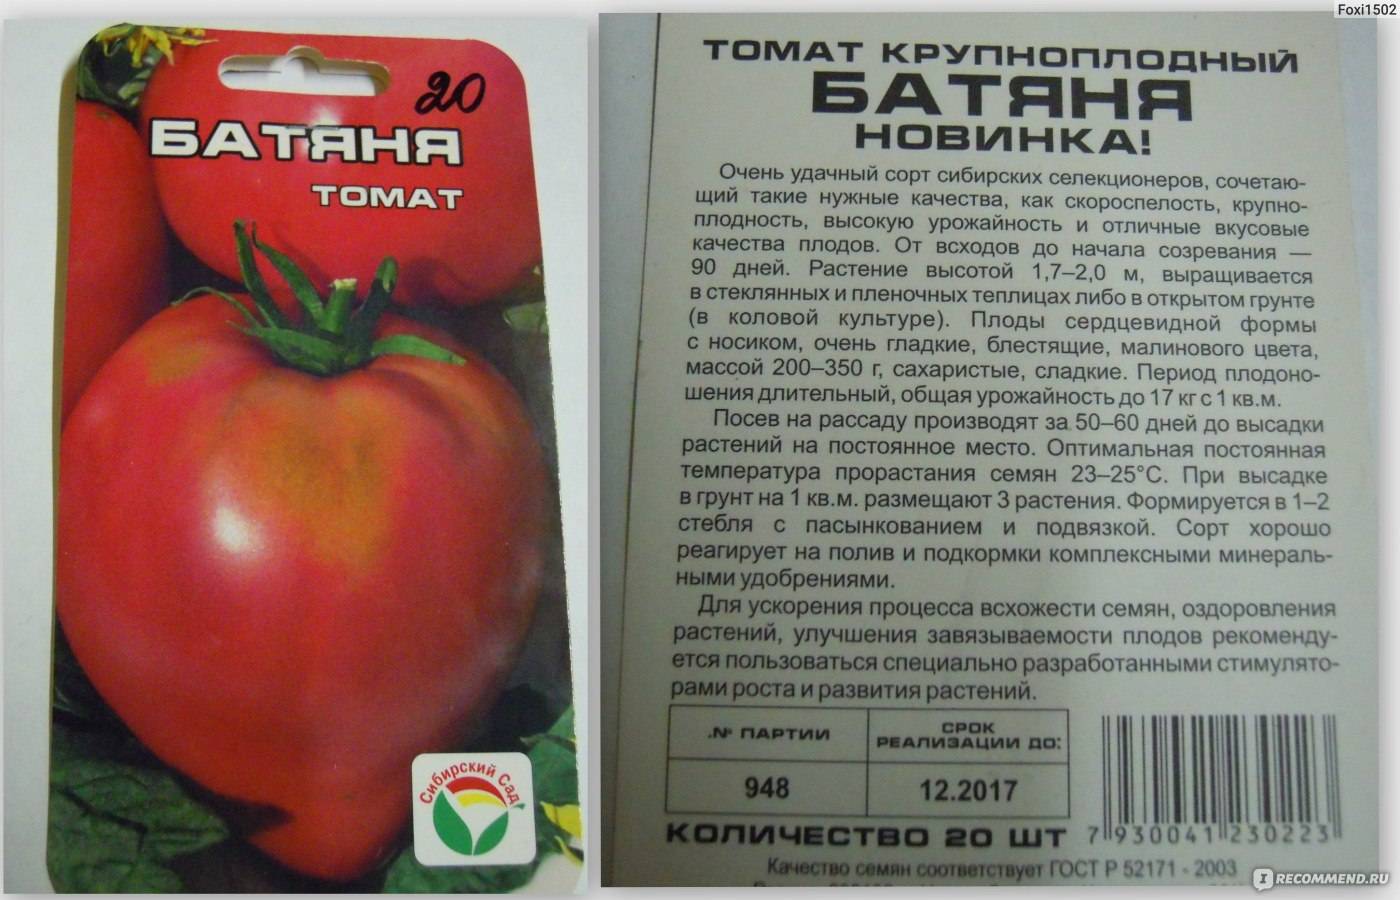 Томат матиас f1: описание сорта, фото и отзывы об урожайности помидоров, характеристика куста